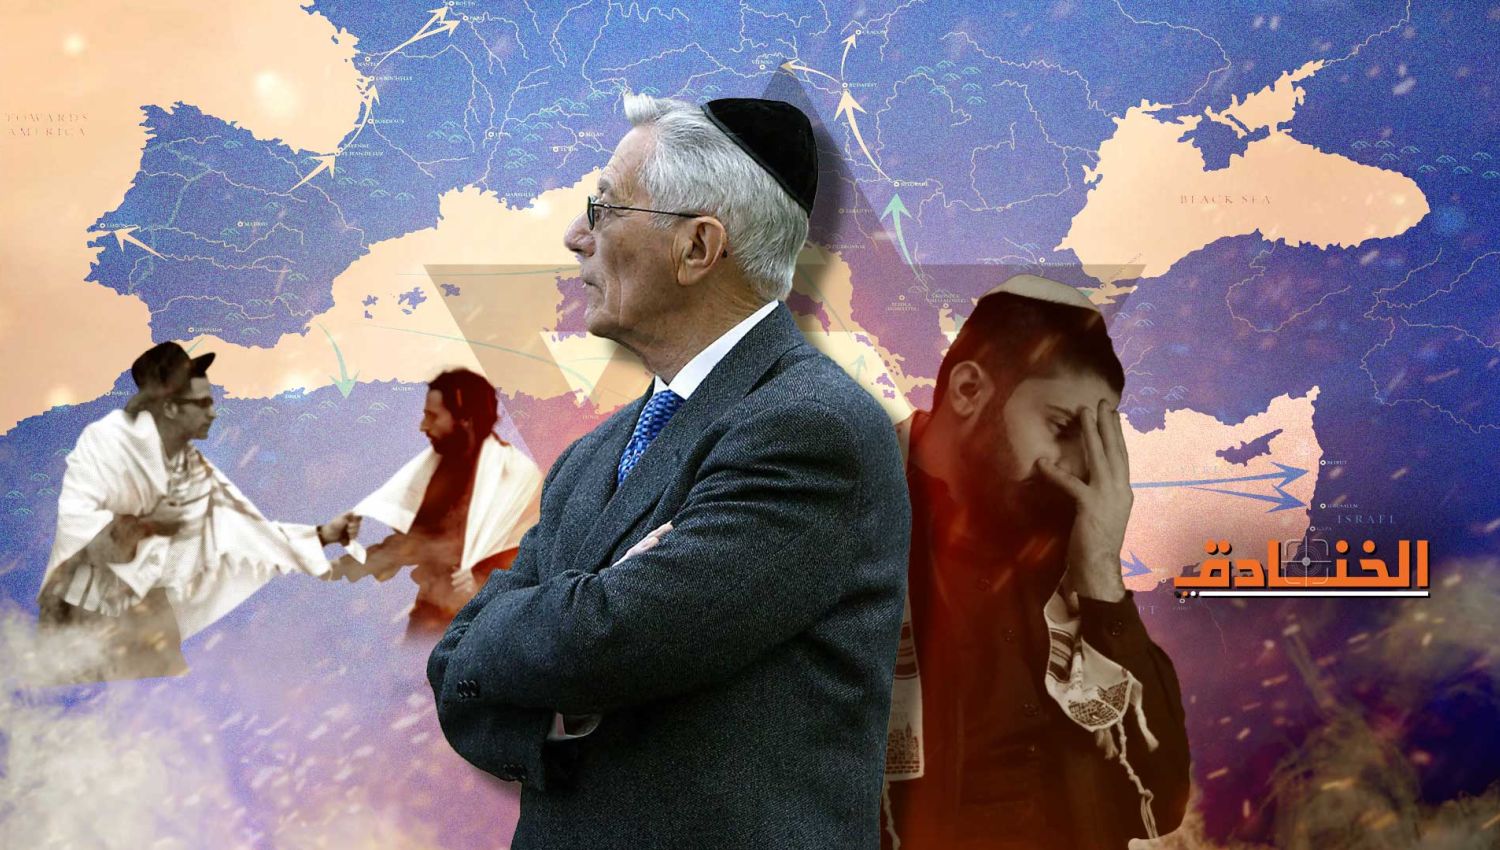 السفارديم: خدم الطبقة العليا في إسرائيل